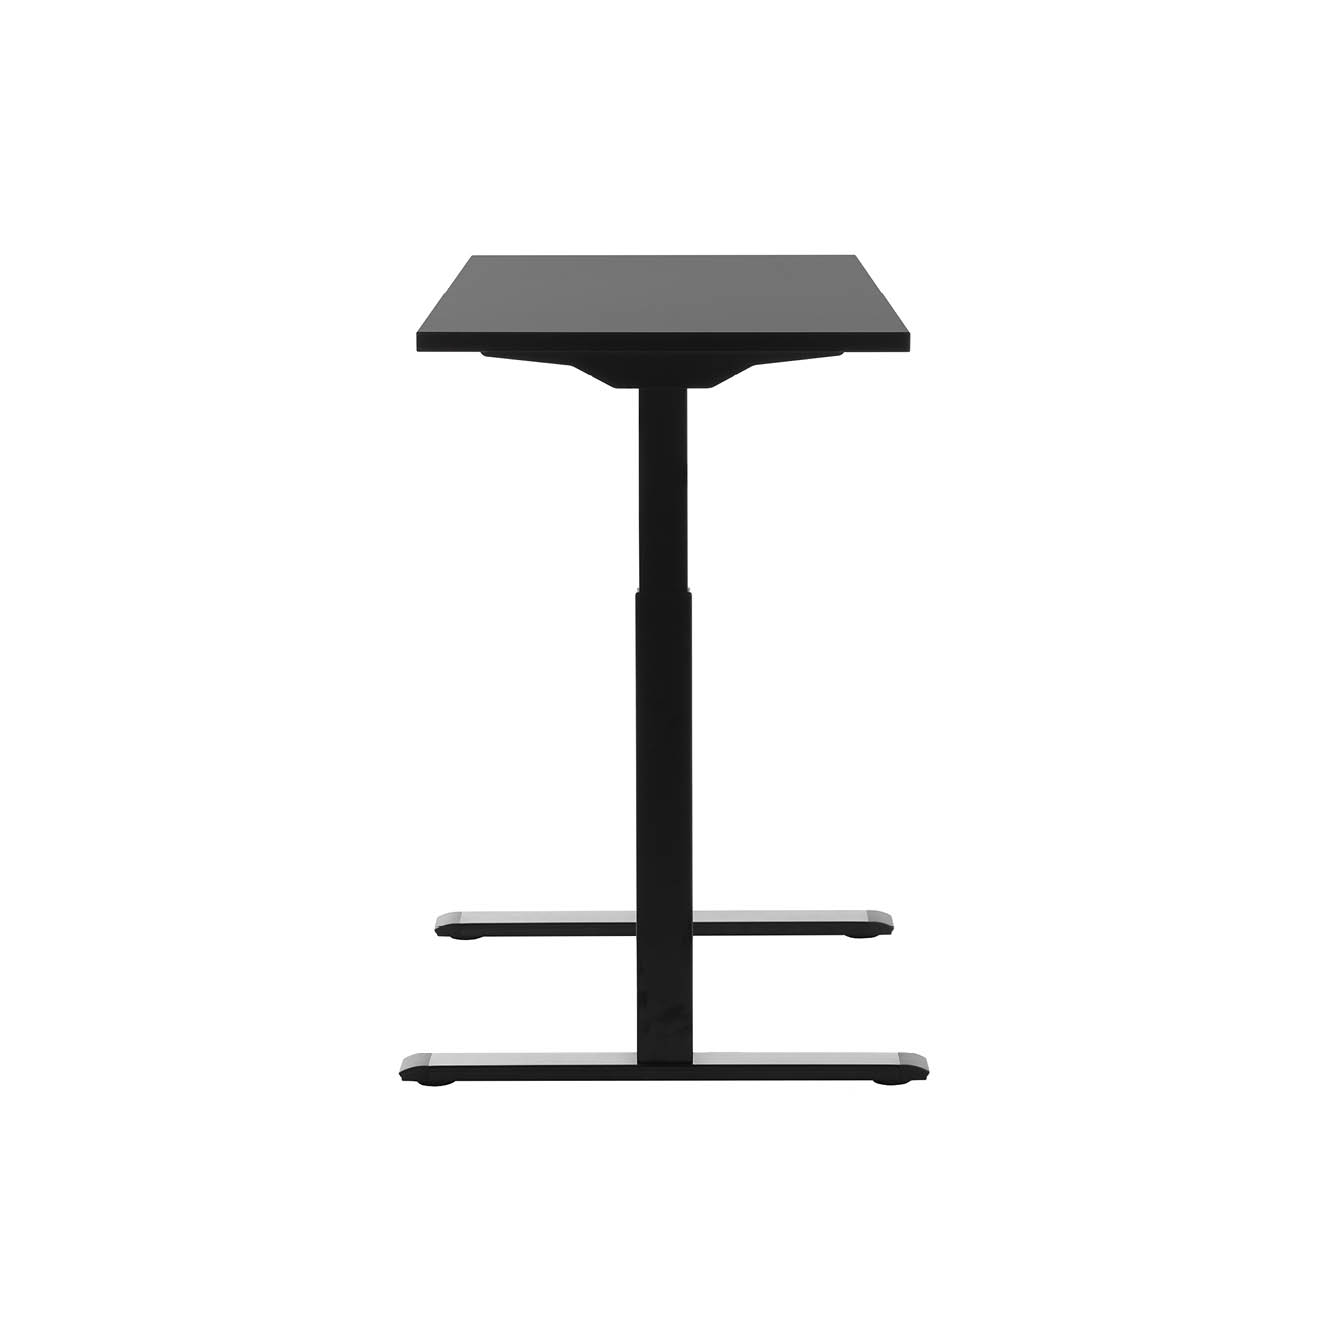 120 x 60 cm Schreibtisch Topstar Ergo E-Table höhenverstellbar - schwarz, schwarz